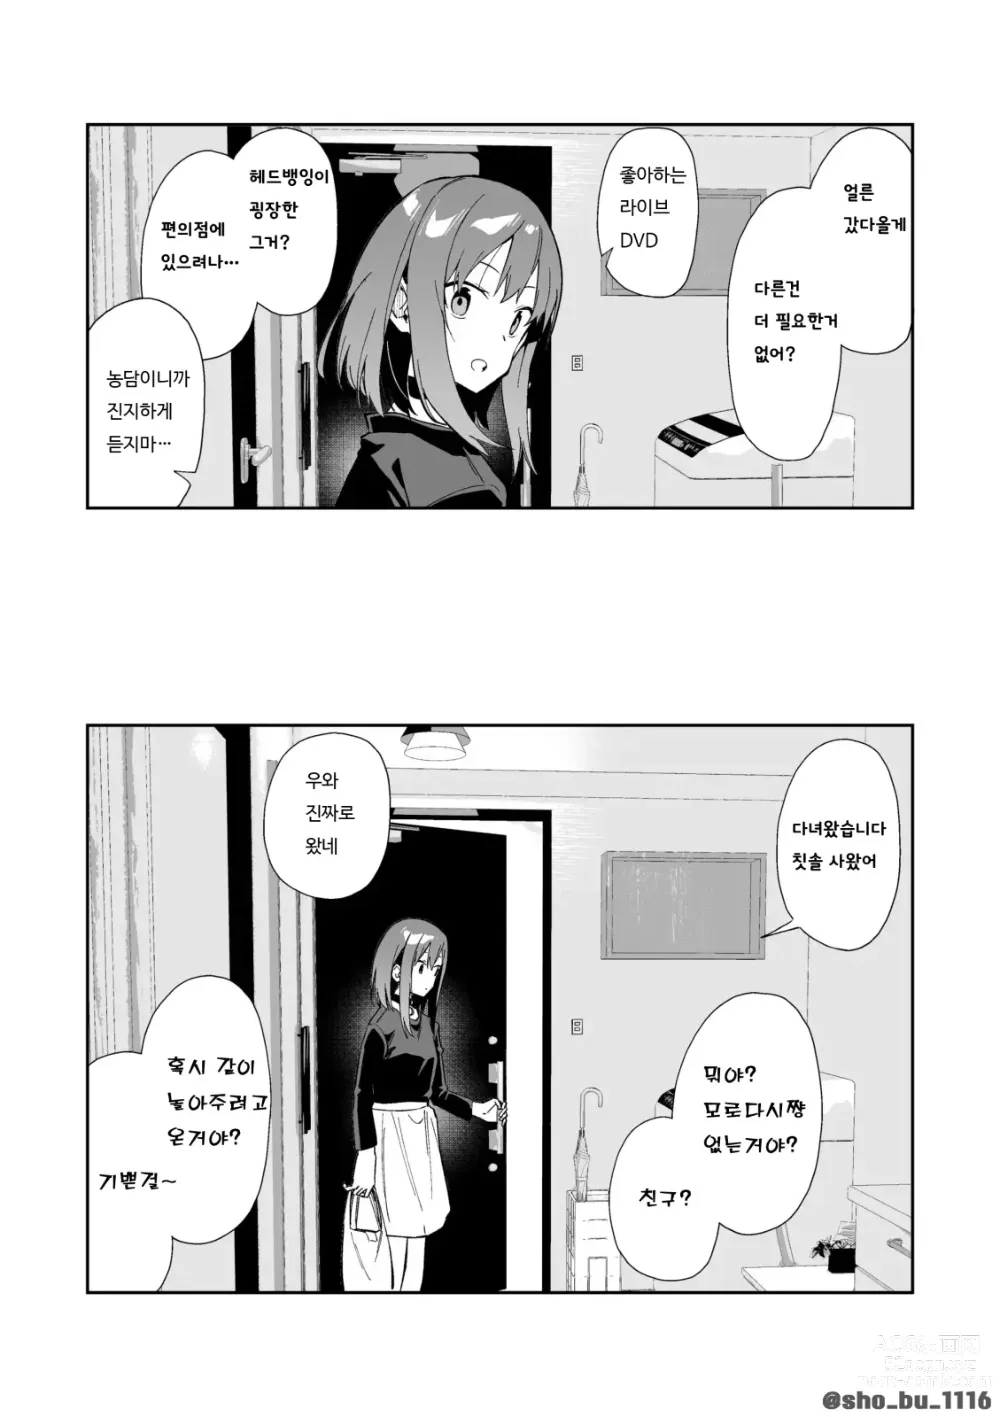 Page 6 of doujinshi 소꿉친구에게 상담하는 유명방송인 + 아키쟝 시점 만화 6P